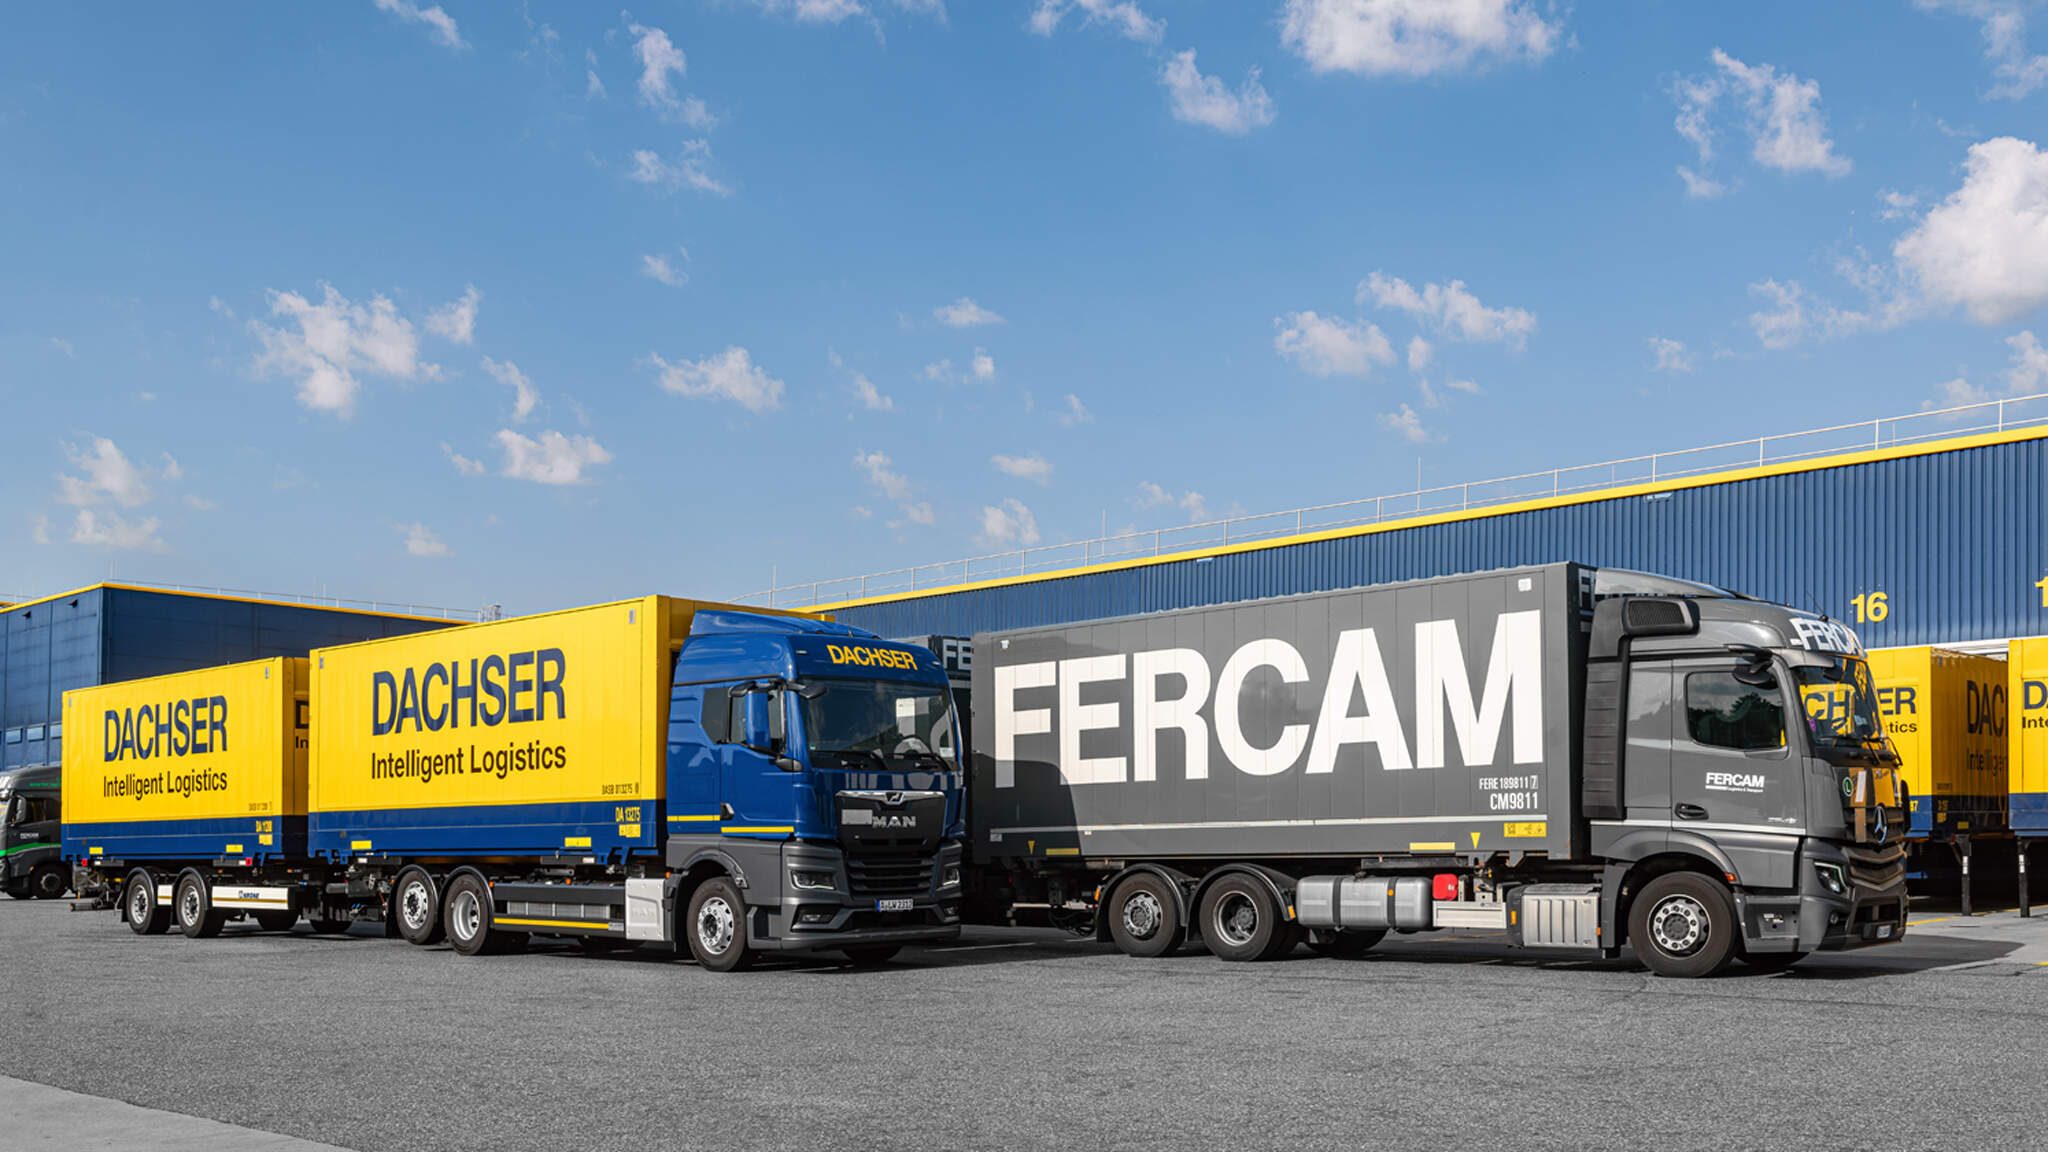 通過長期的合作夥伴關係，DACHSER 和 FERCAM 在拼箱業務運營方面已經實現無縫銜接。
 